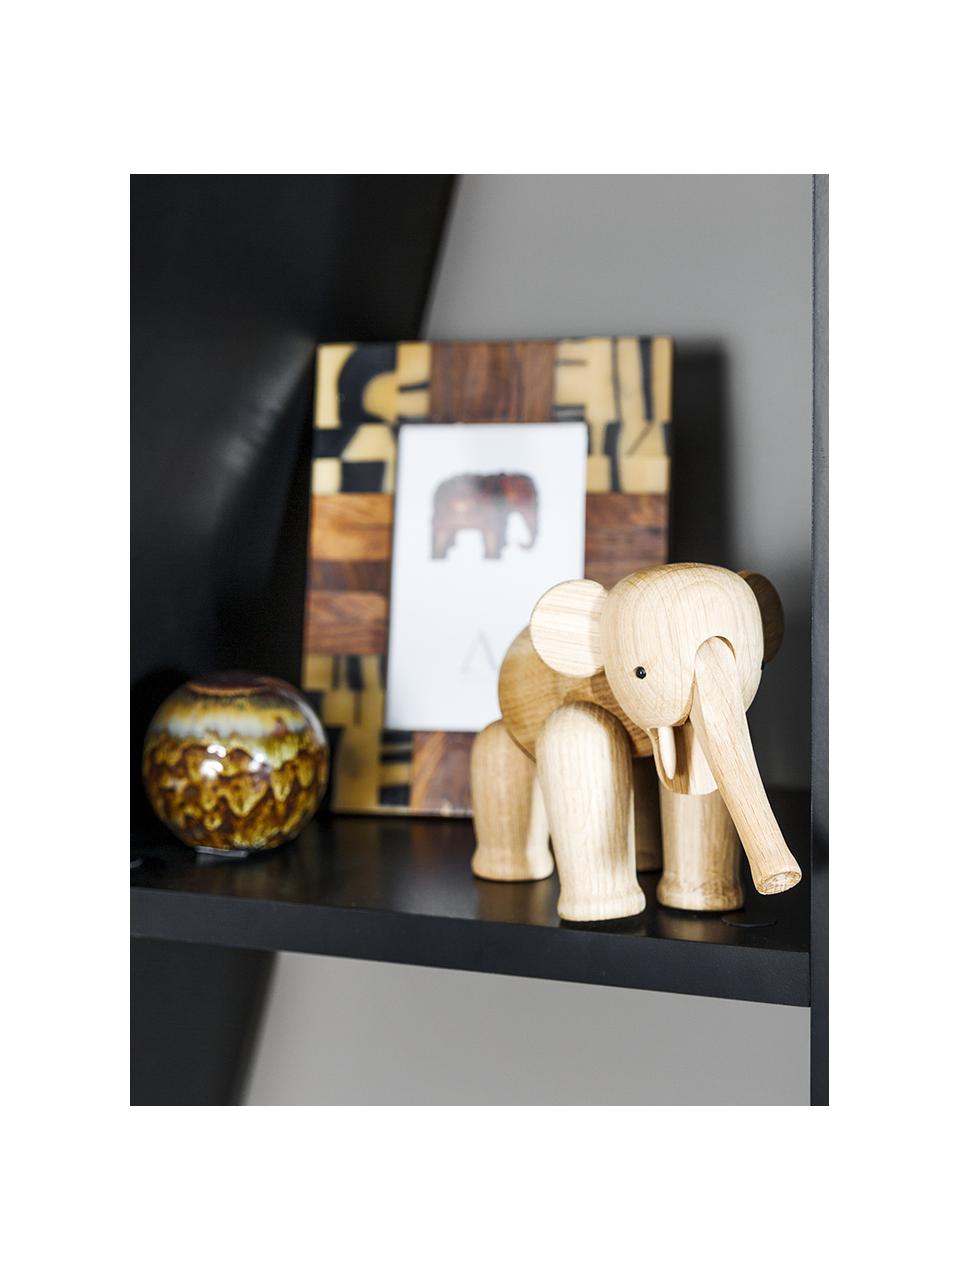 Dekorace Elefant, Dubové dřevo, Světle hnědá, Š 17 cm, V 12 cm